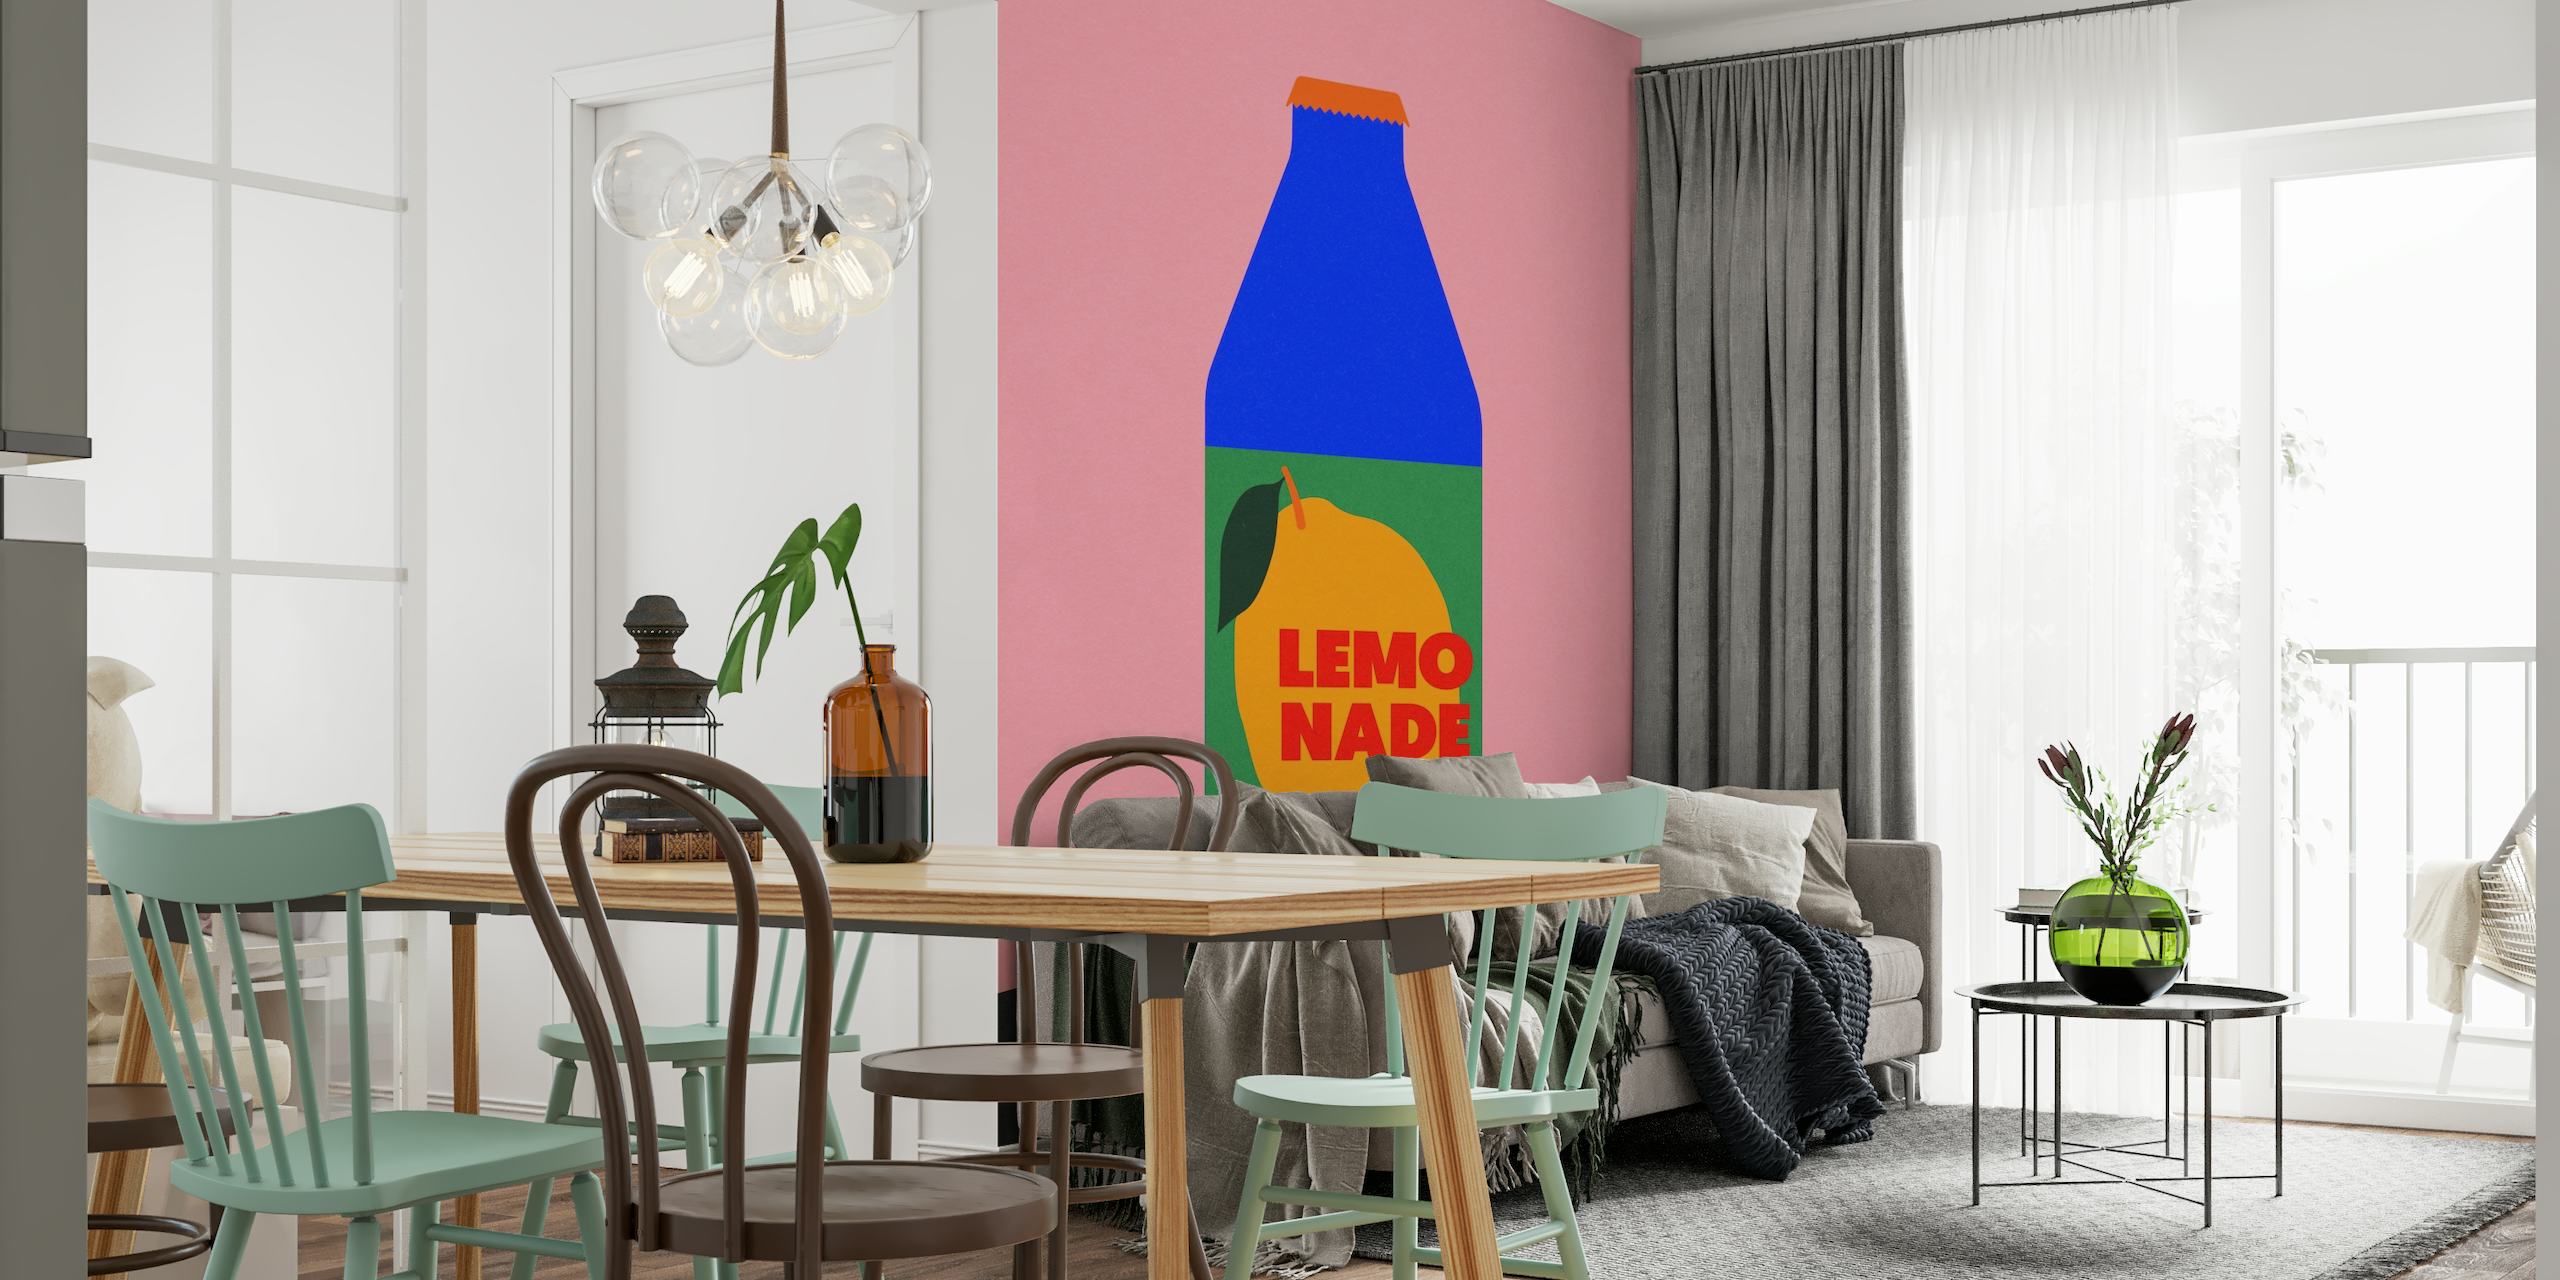 Nowoczesna fototapeta „Lemo Nade” z różowym tłem i niebieską ilustracją butelki